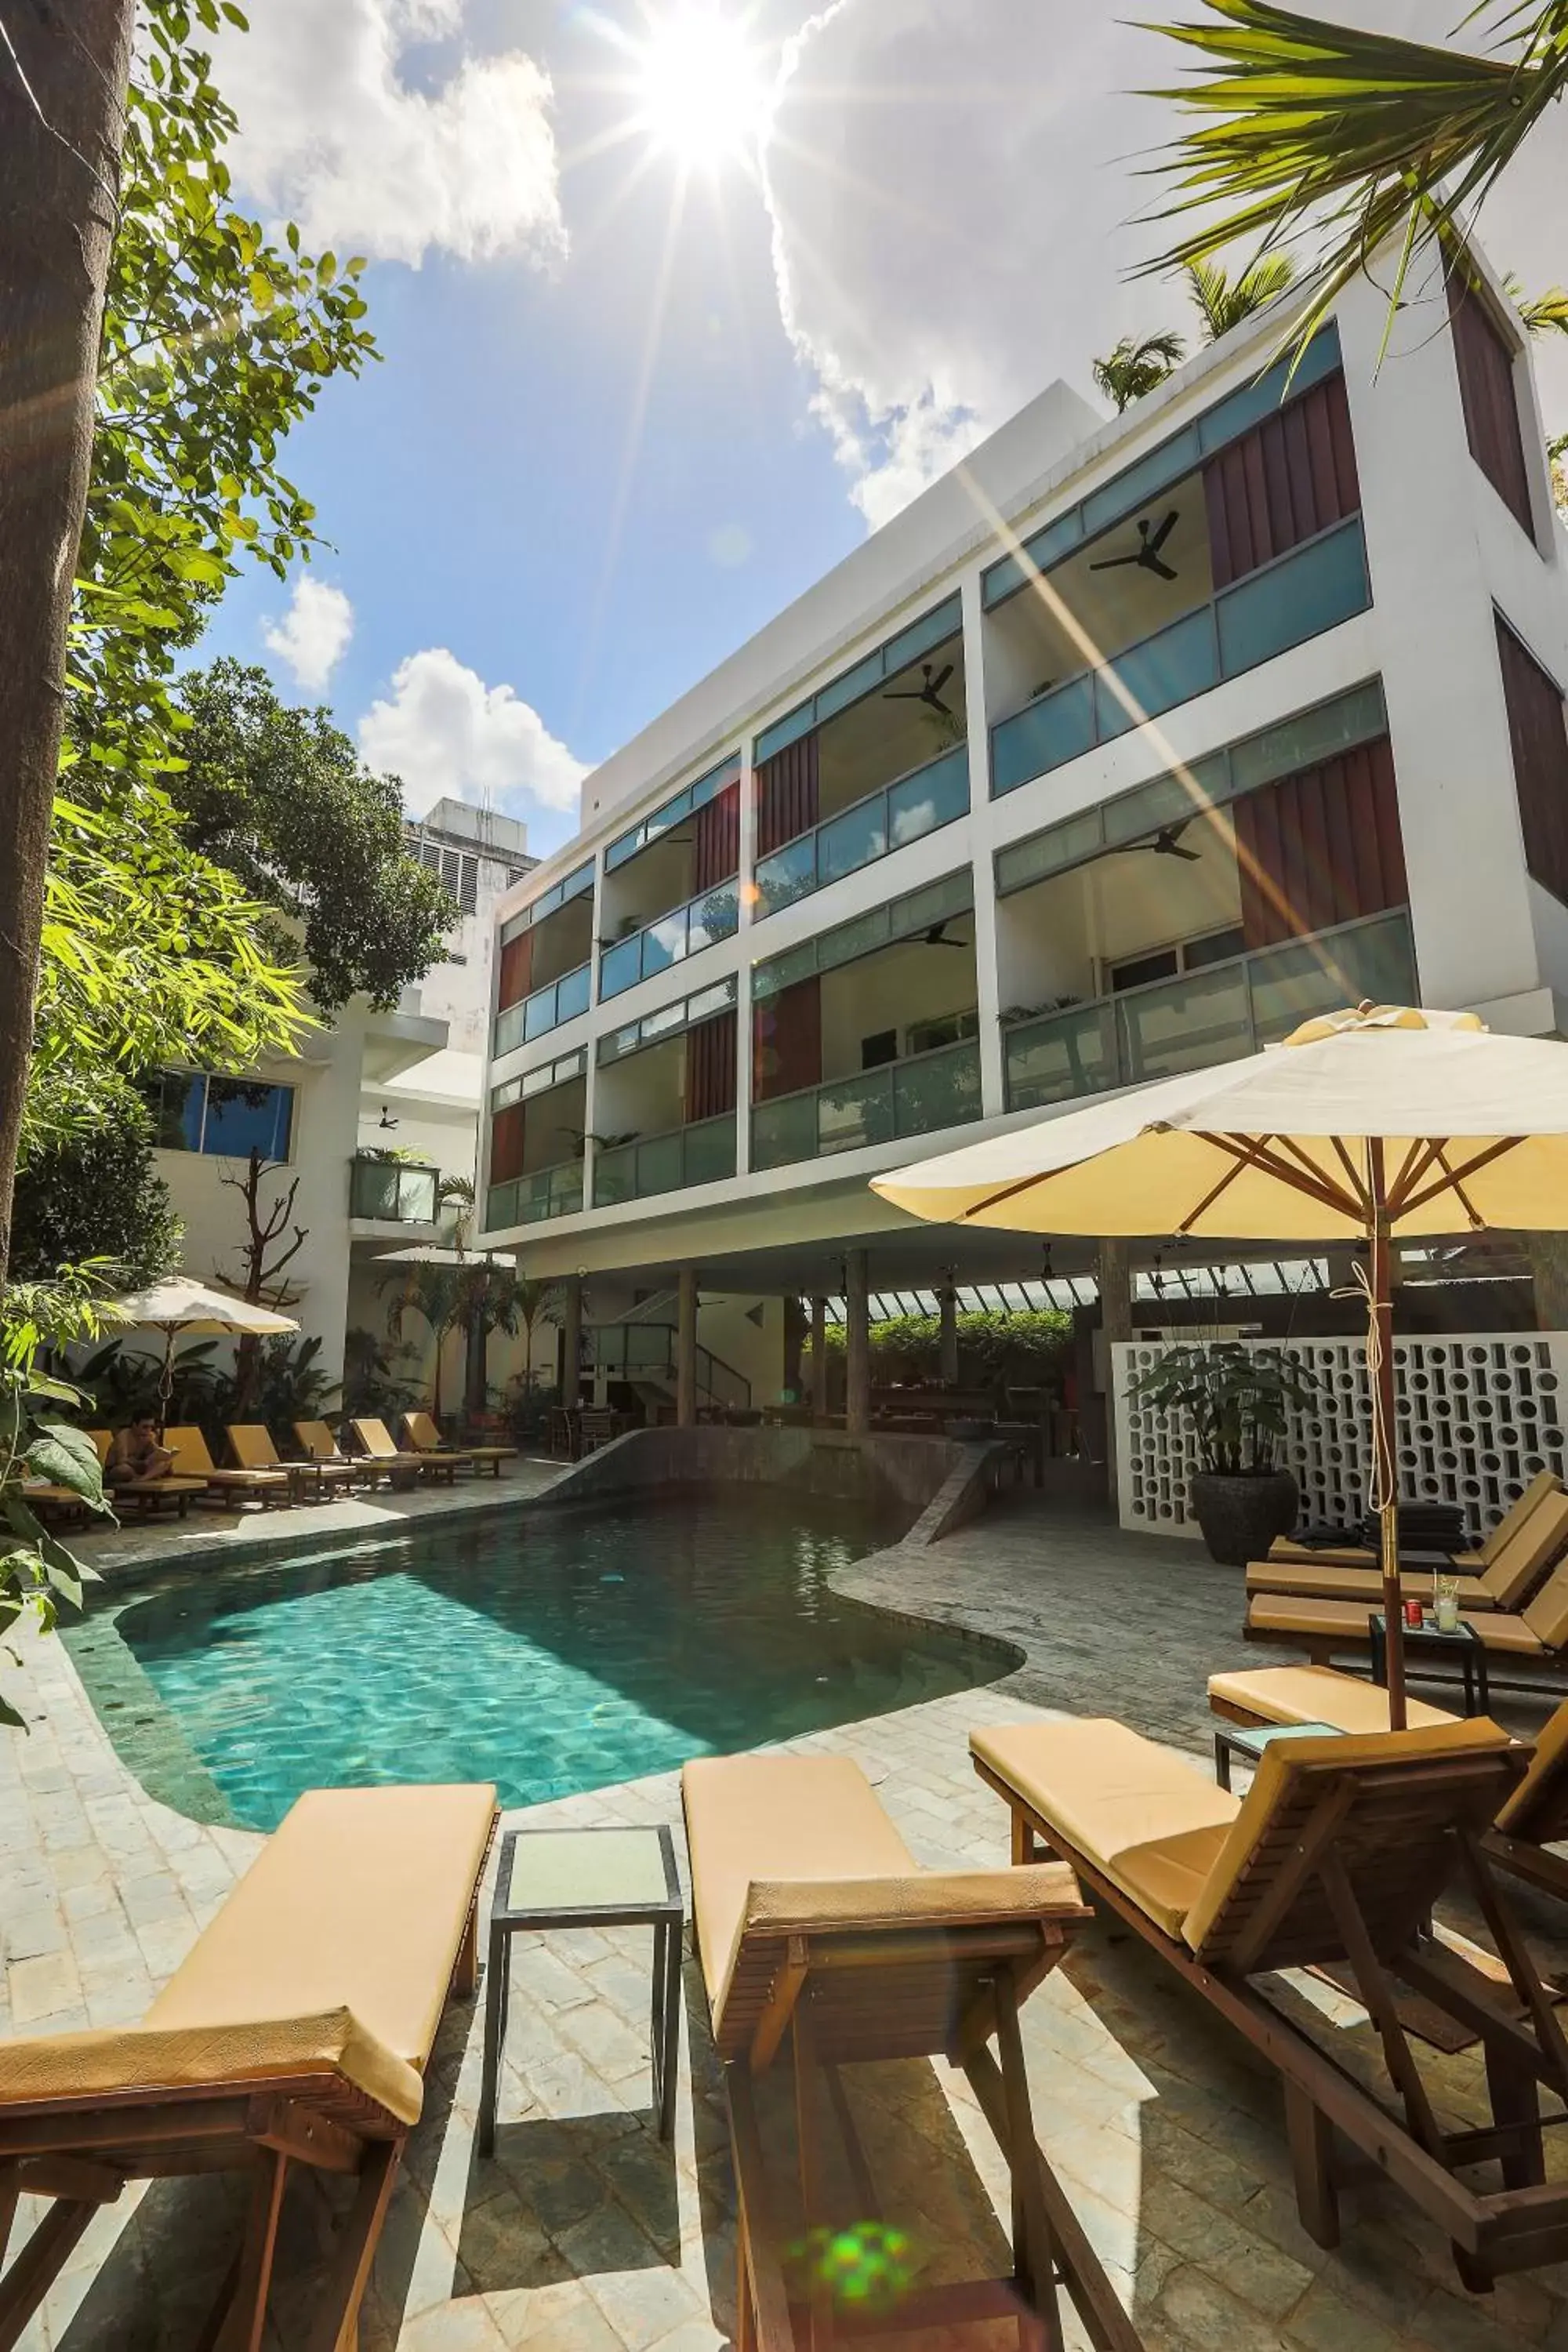 Swimming pool in Rambutan Resort – Phnom Penh